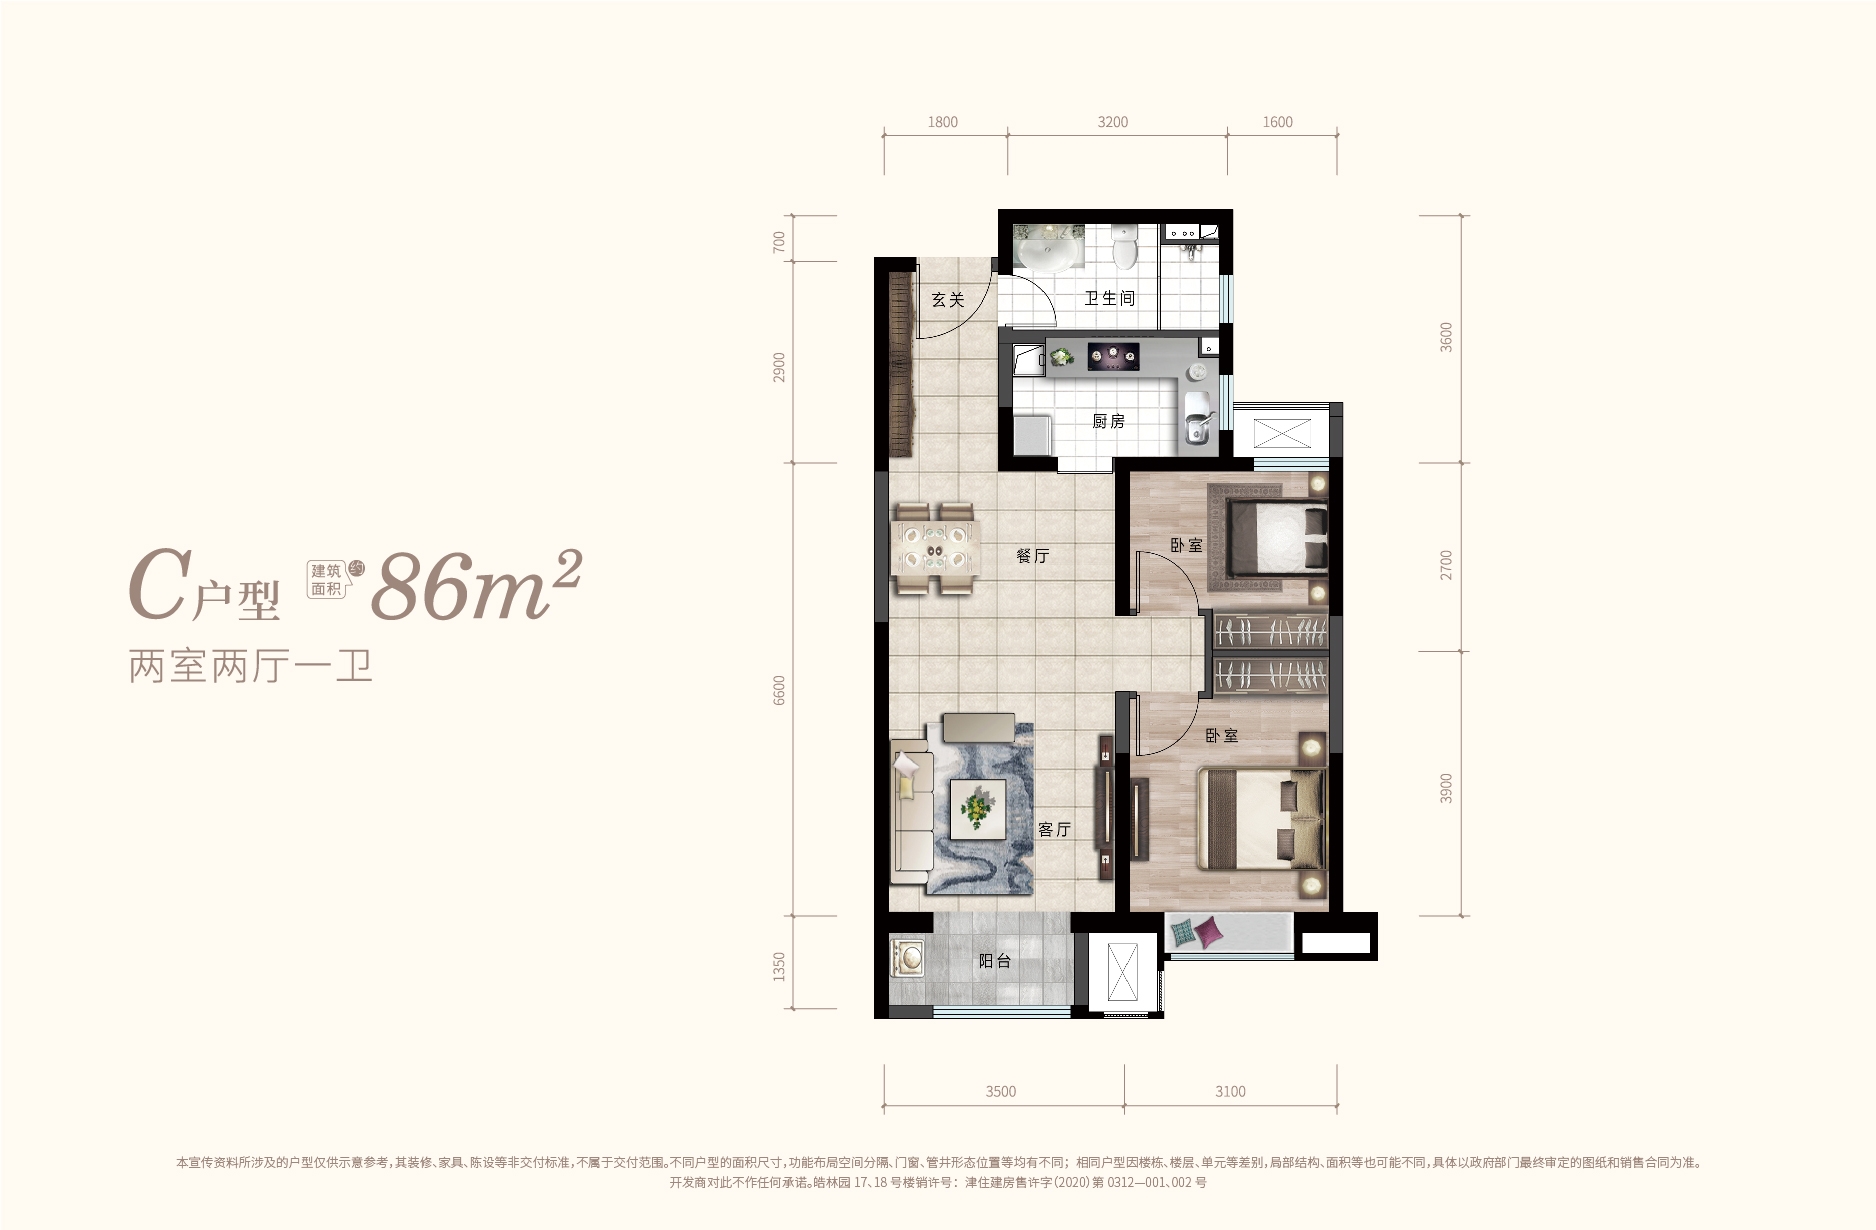 高层C户型 86平米 两室两厅一卫